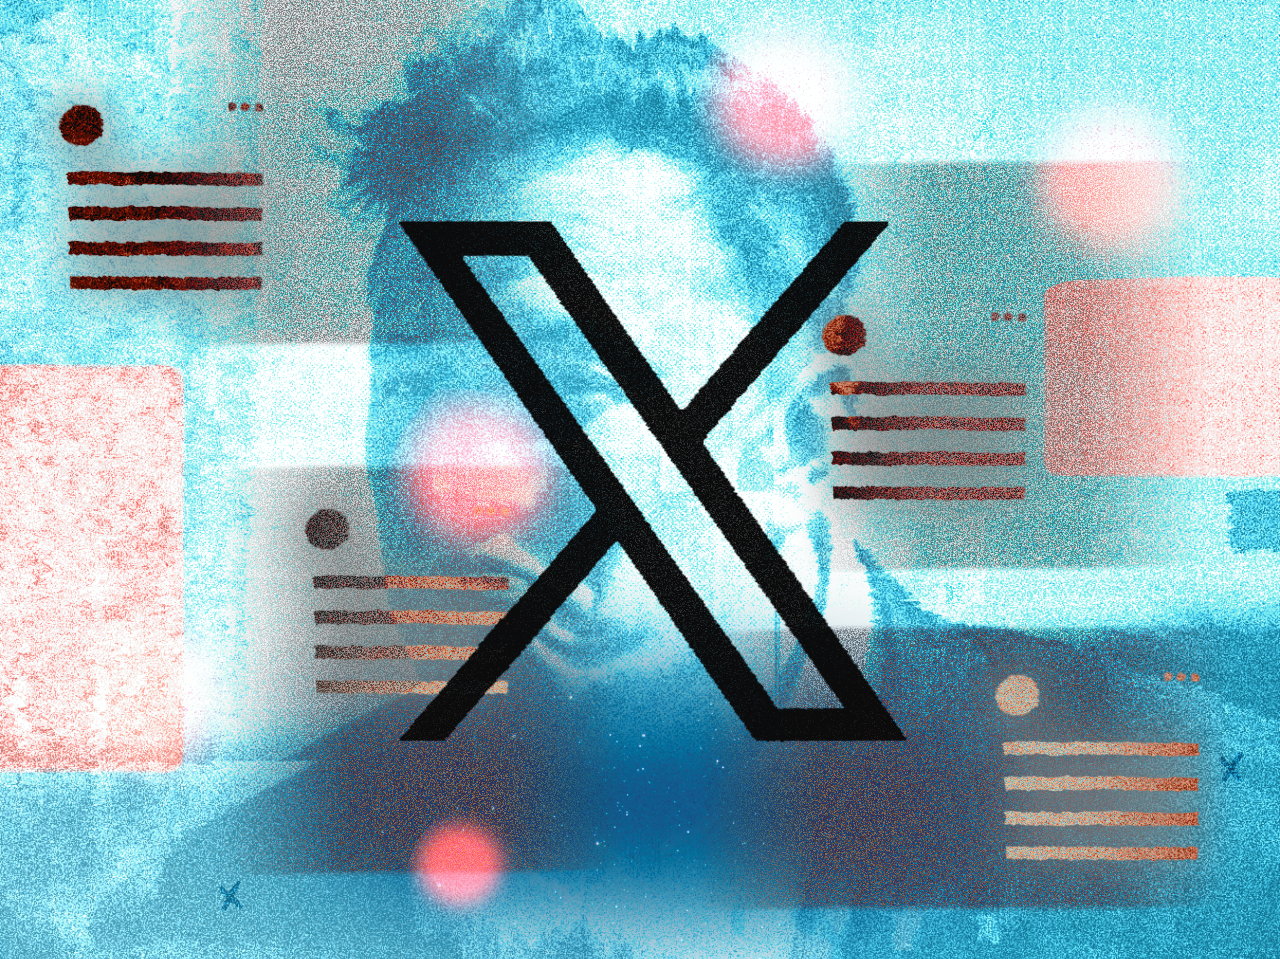 Logo do X (Twitter) contra um fundo azul com detalhes vermelhos estilizado e foto de Musk ao fundo.